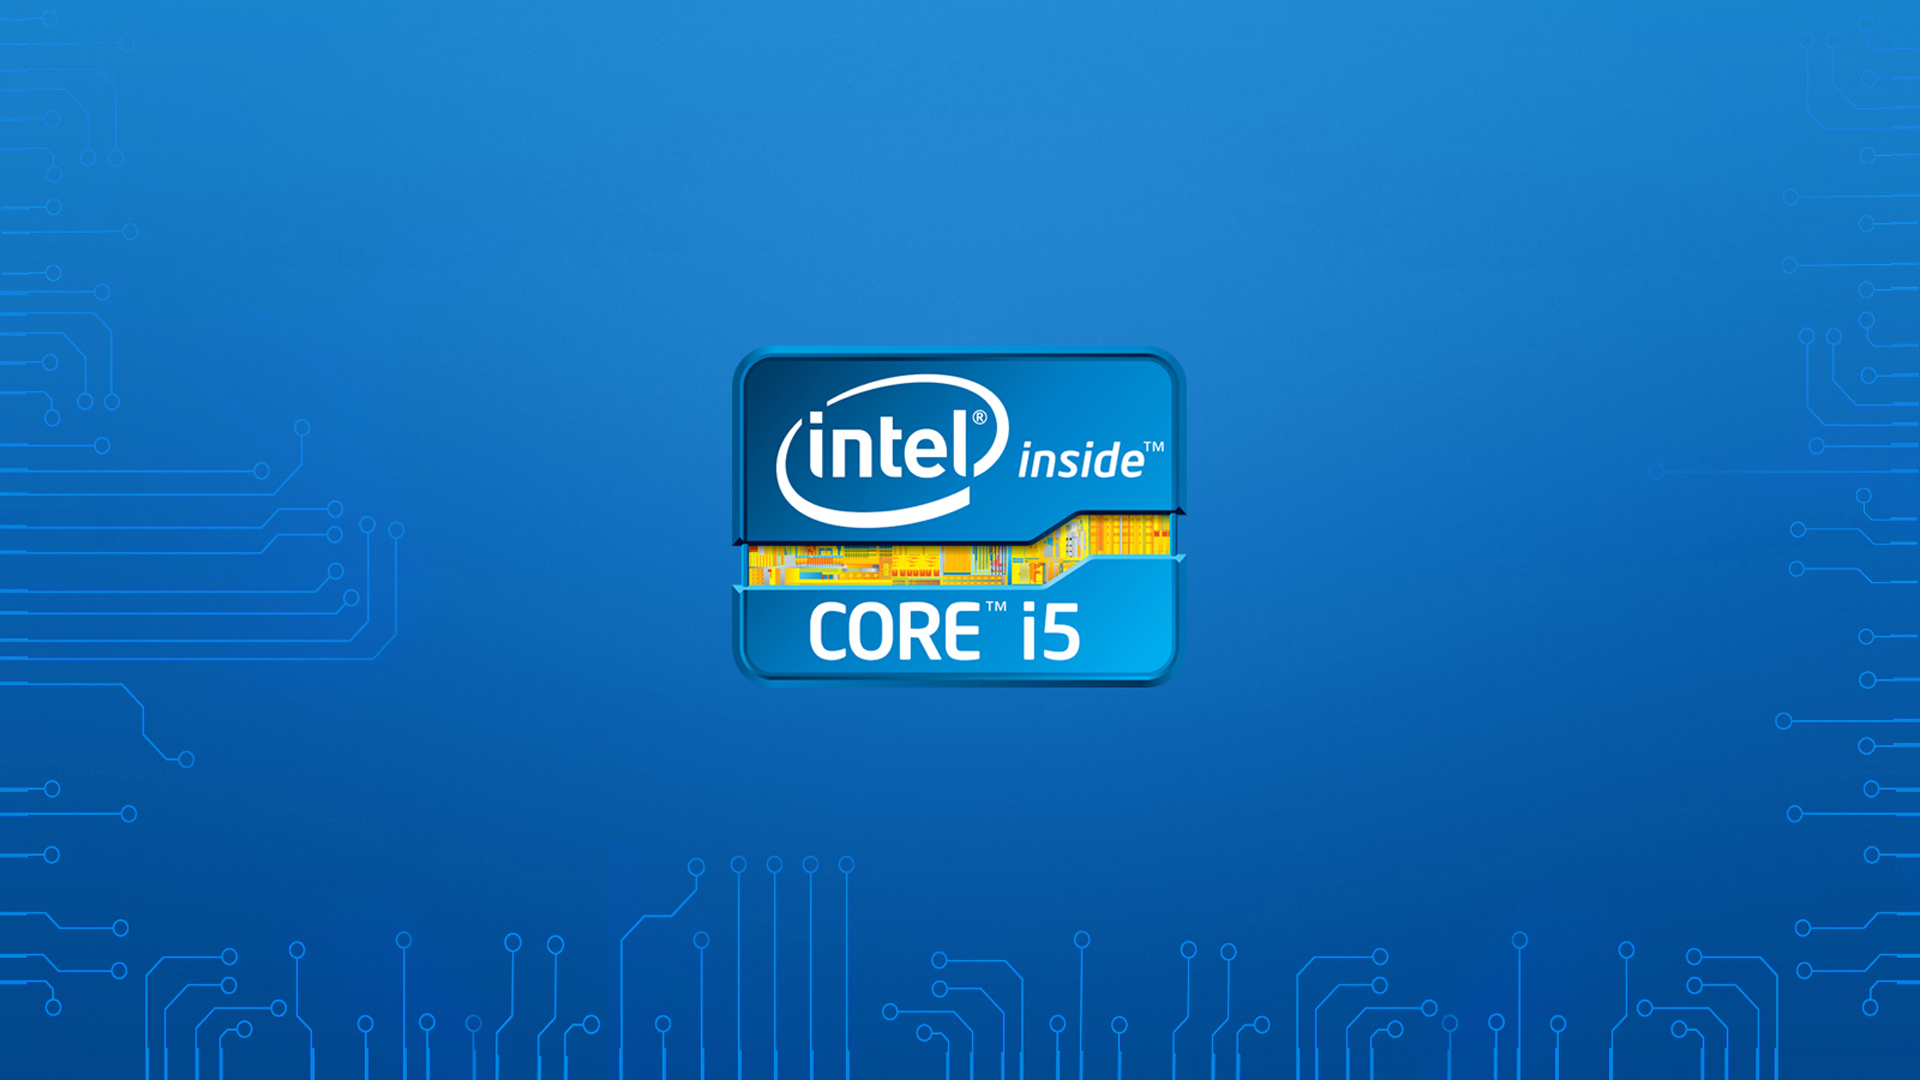 Download Wallpaper Logo Intel Hitech Intel I5 Section Hi Tech